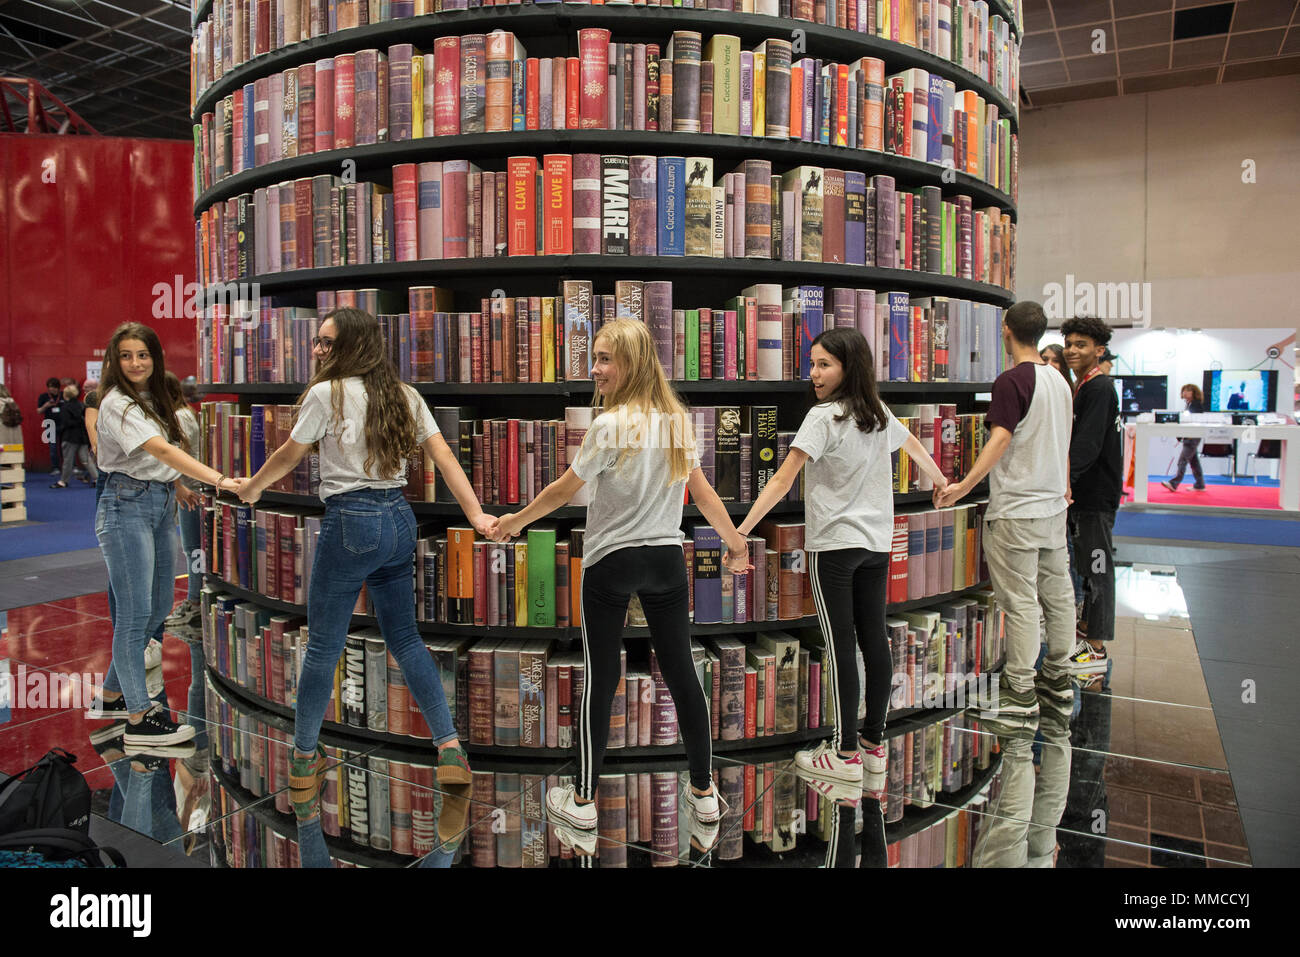 Mayo 10, 2018 - Turín, Piamonte, Italia - personas asistan a la Feria Internacional del Libro de Turín 2018. (Crédito de la Imagen: © Stefano Guidi via ZUMA Wire) Foto de stock